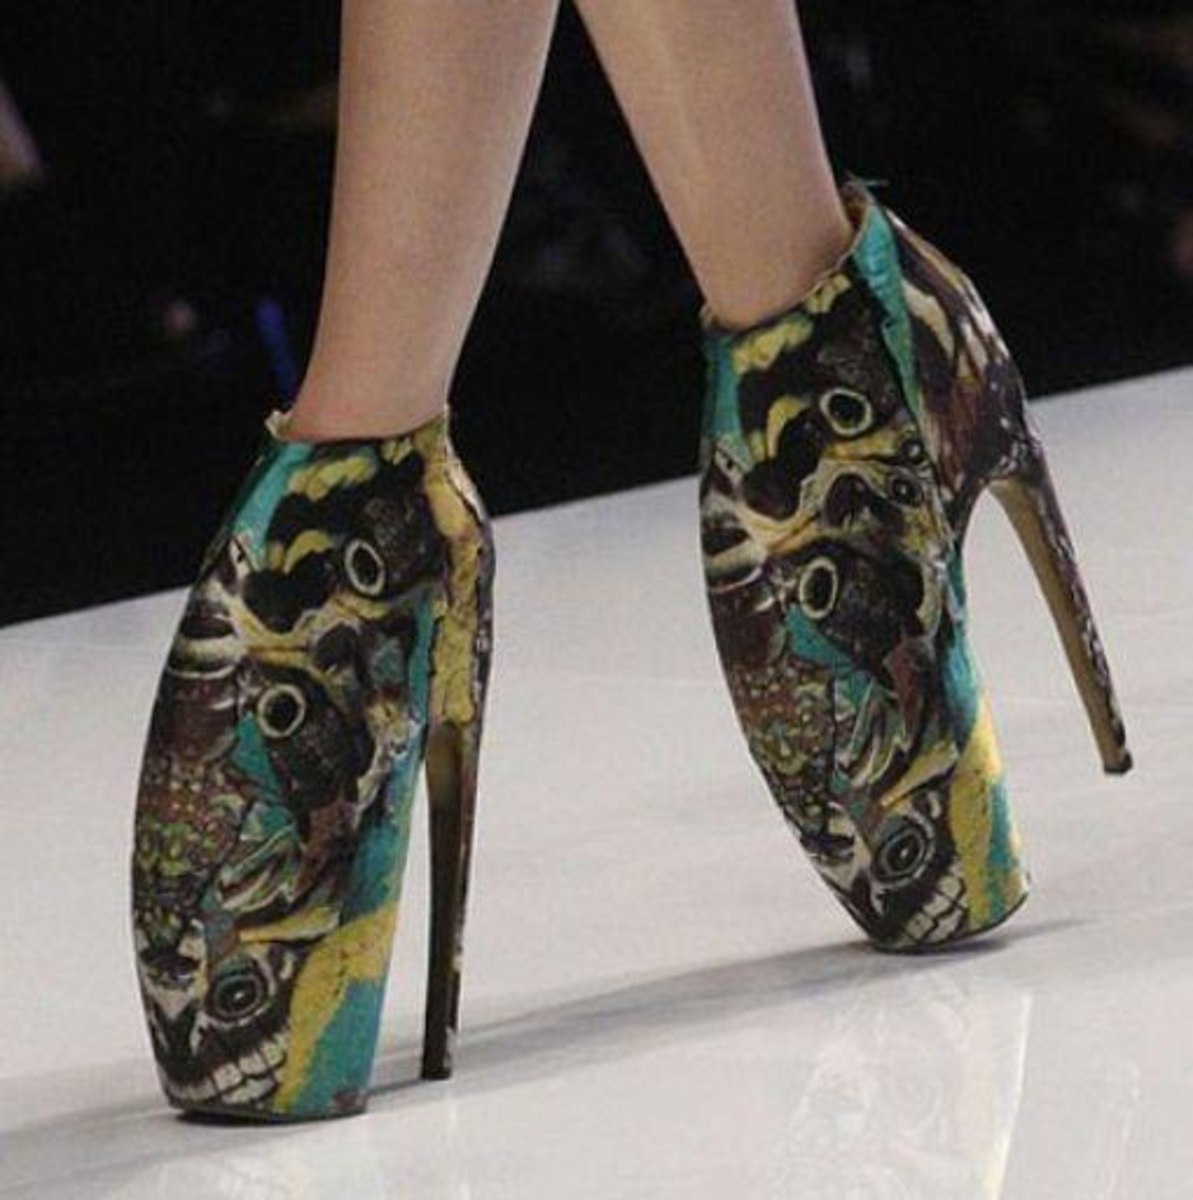 Нестандартная обувь. Необычная обувь. Необычные туфли. Необычные ботинки. Необычная дизайнерская обувь.